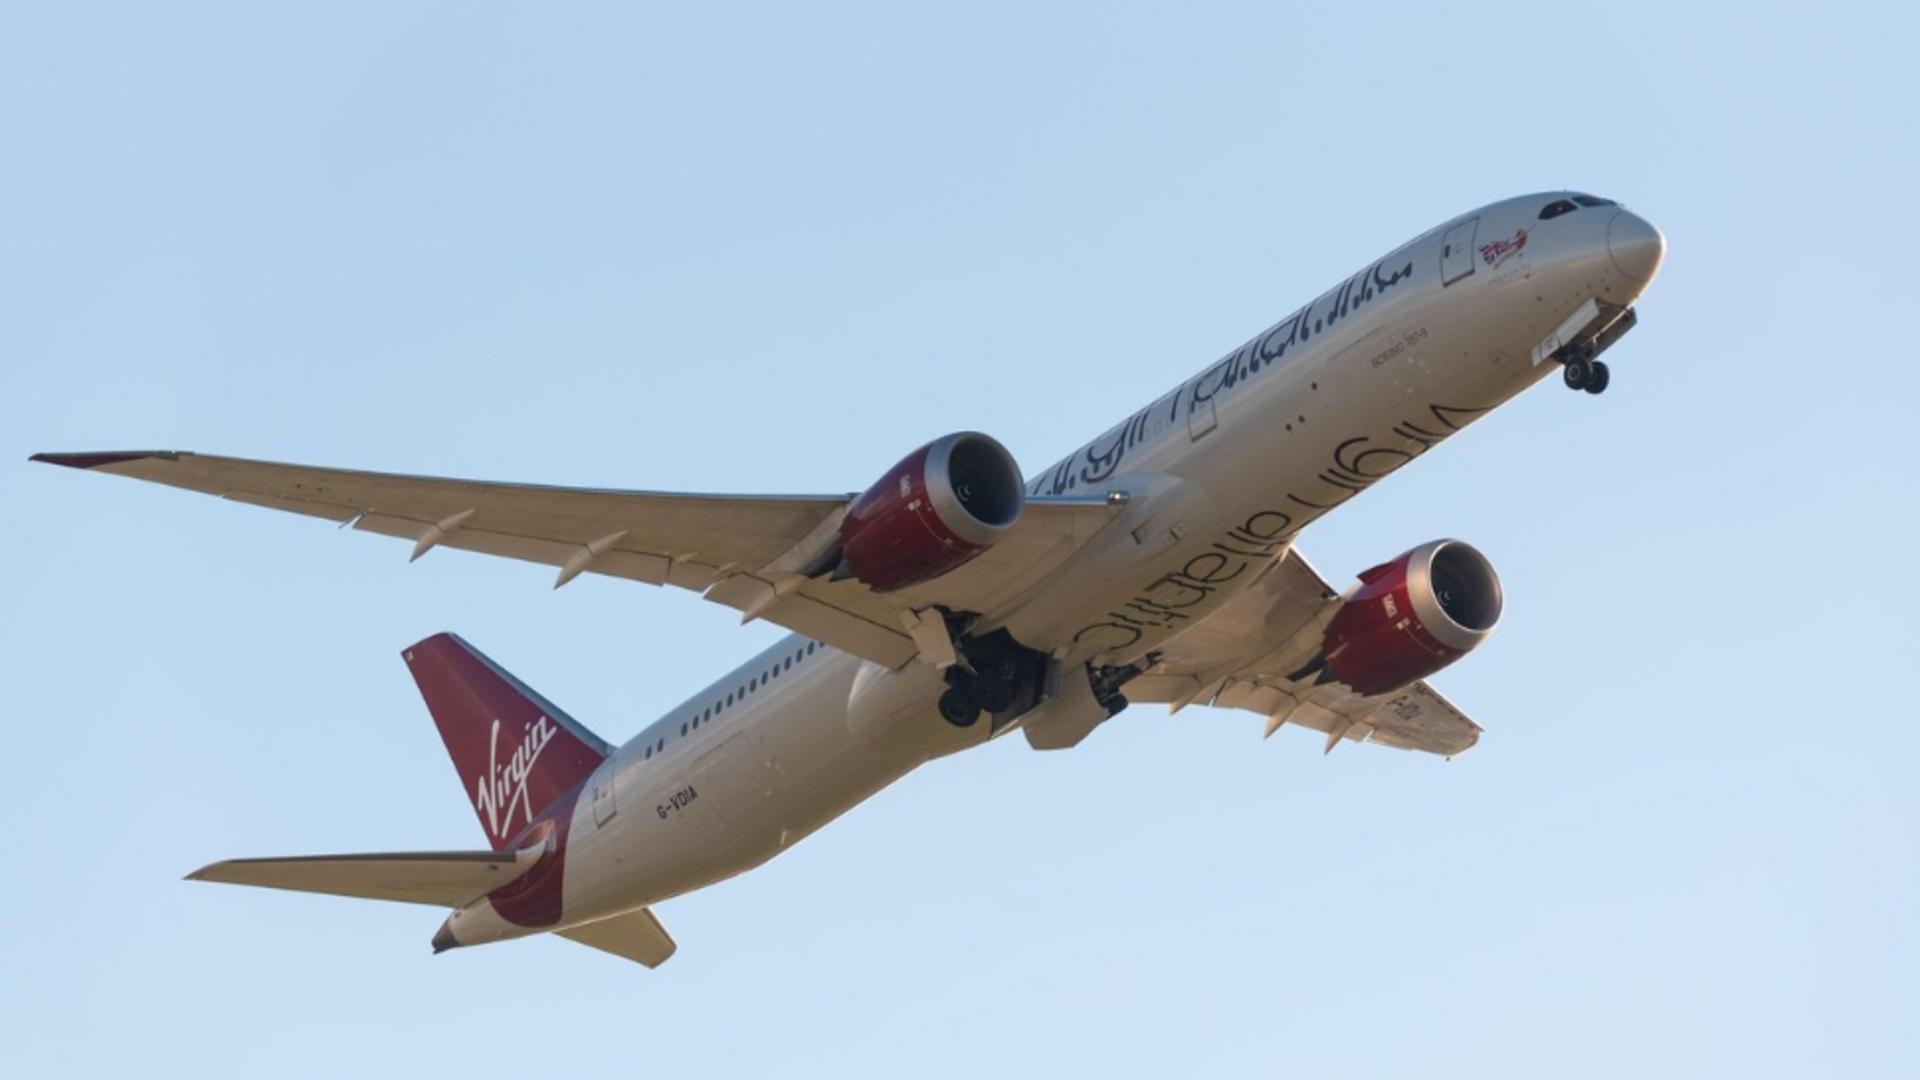 Un zbor al companiei Virgin Atlantic, anulat de urgență! Mai multe șuruburi de fixare la o aripă lipseau